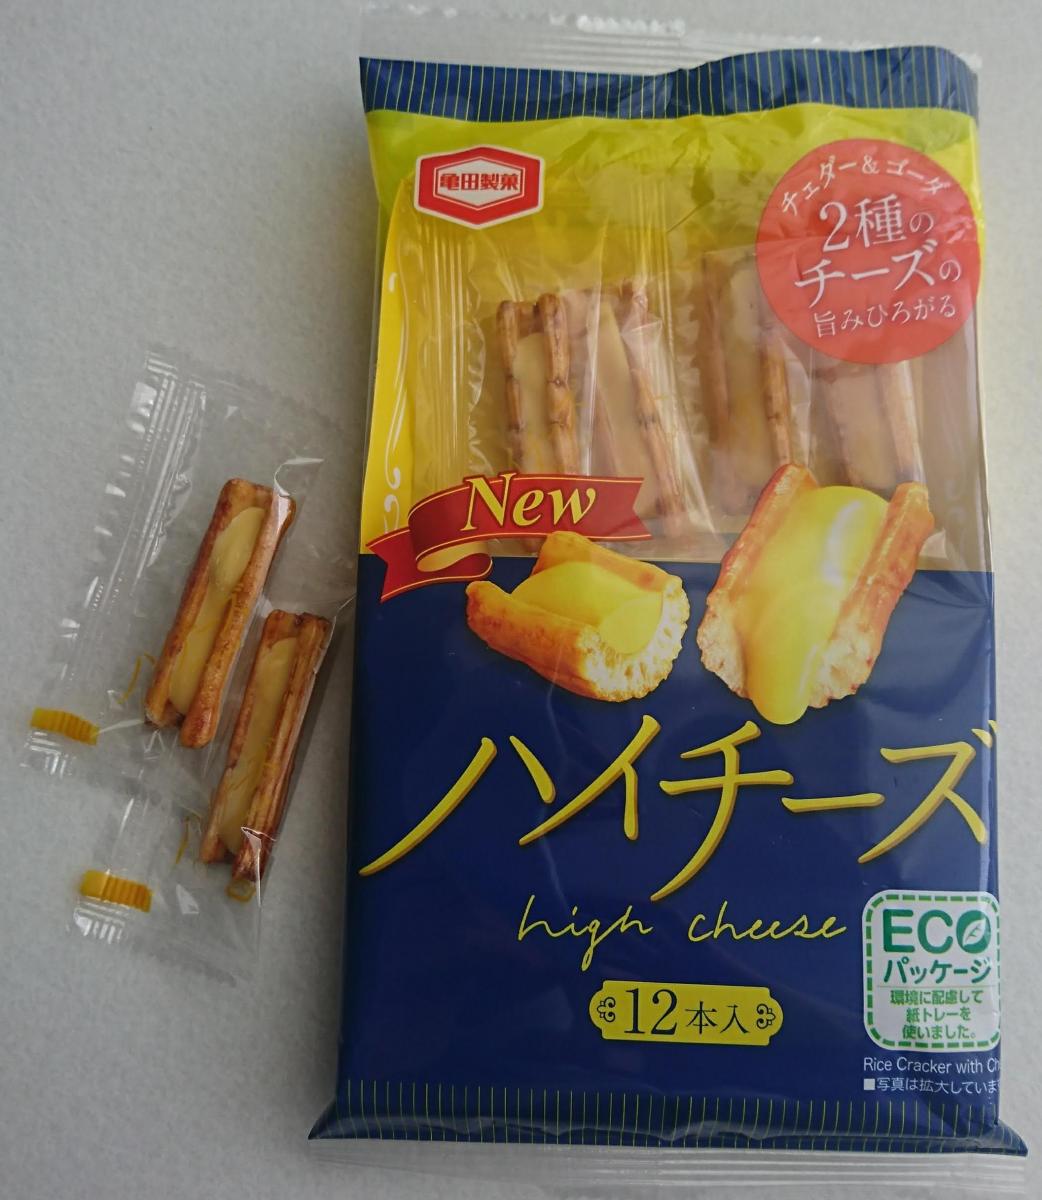 亀田製菓 ハイチーズの商品ページ